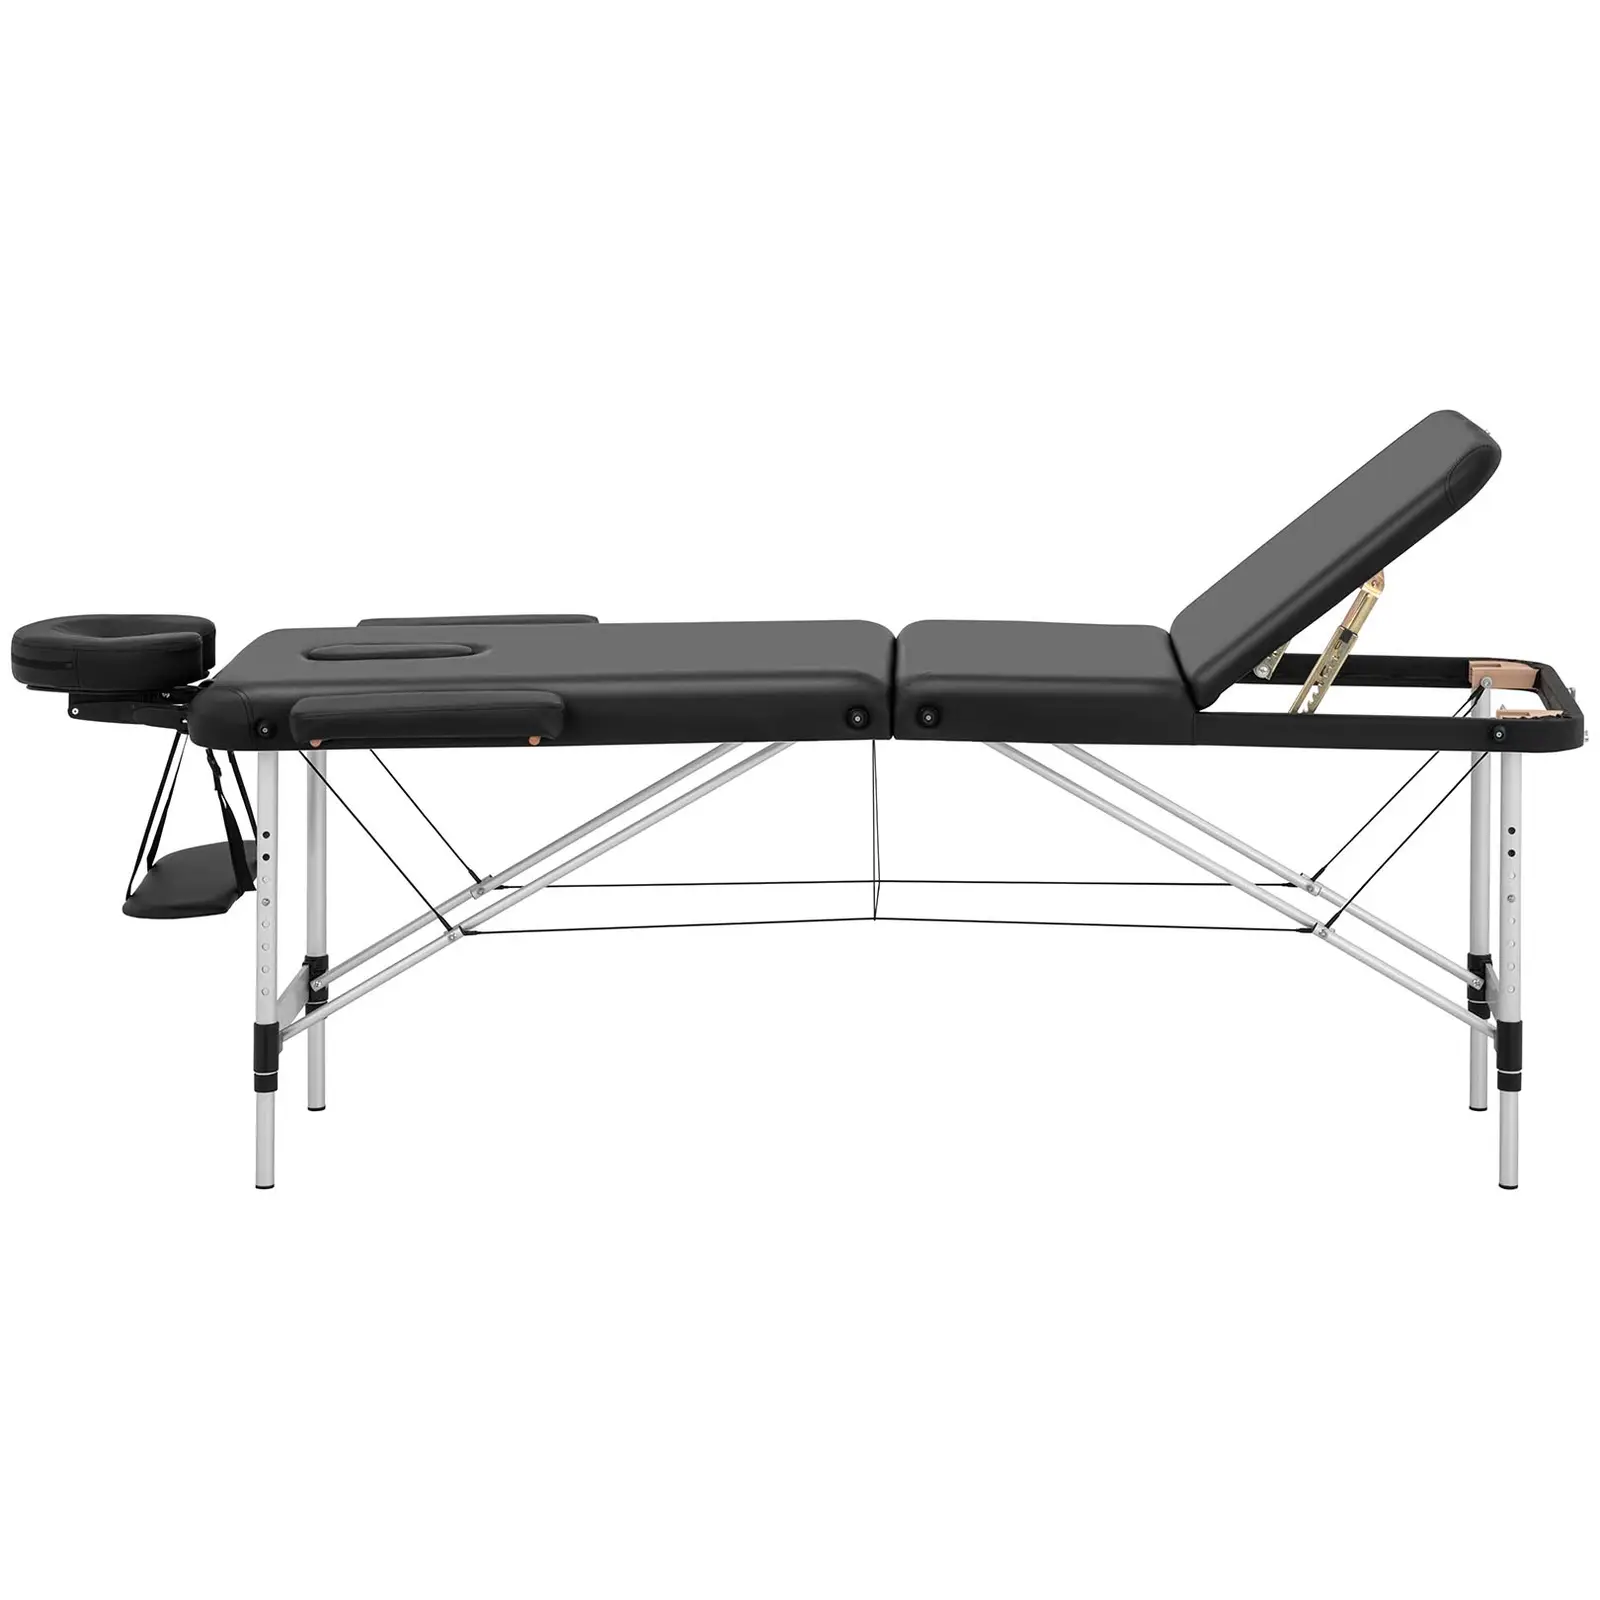 Table de massage pliante - 185 x 60 x 59 cm - 180 kg - Noir